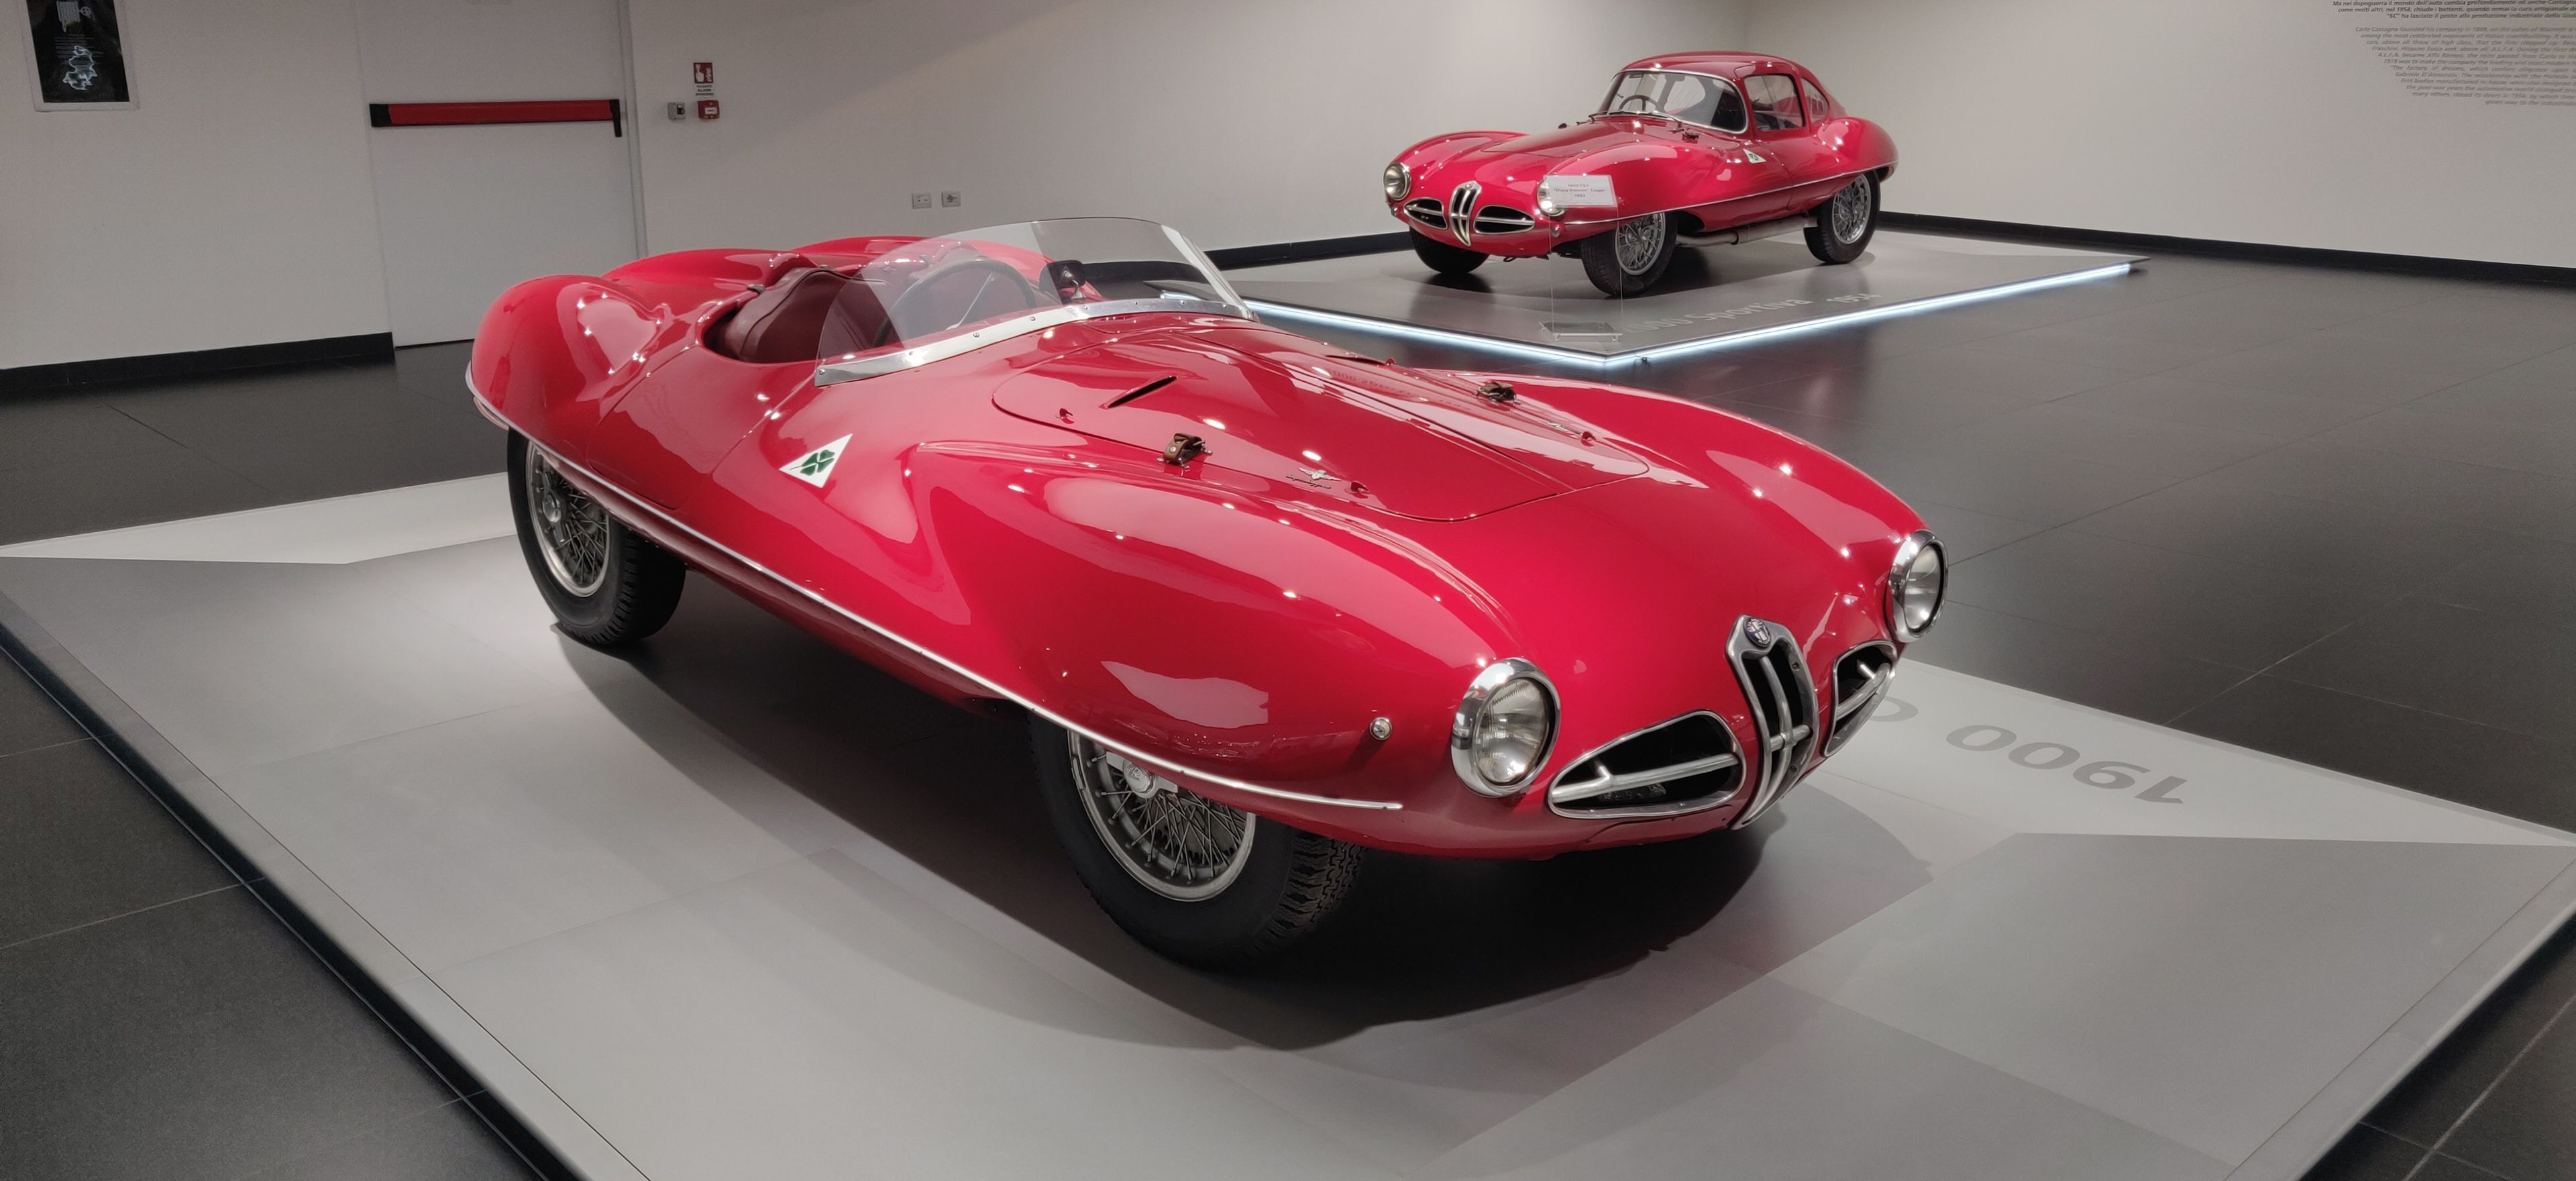 111 aniversario de Alfa Romeo, Museo de Arese, Disco Volante